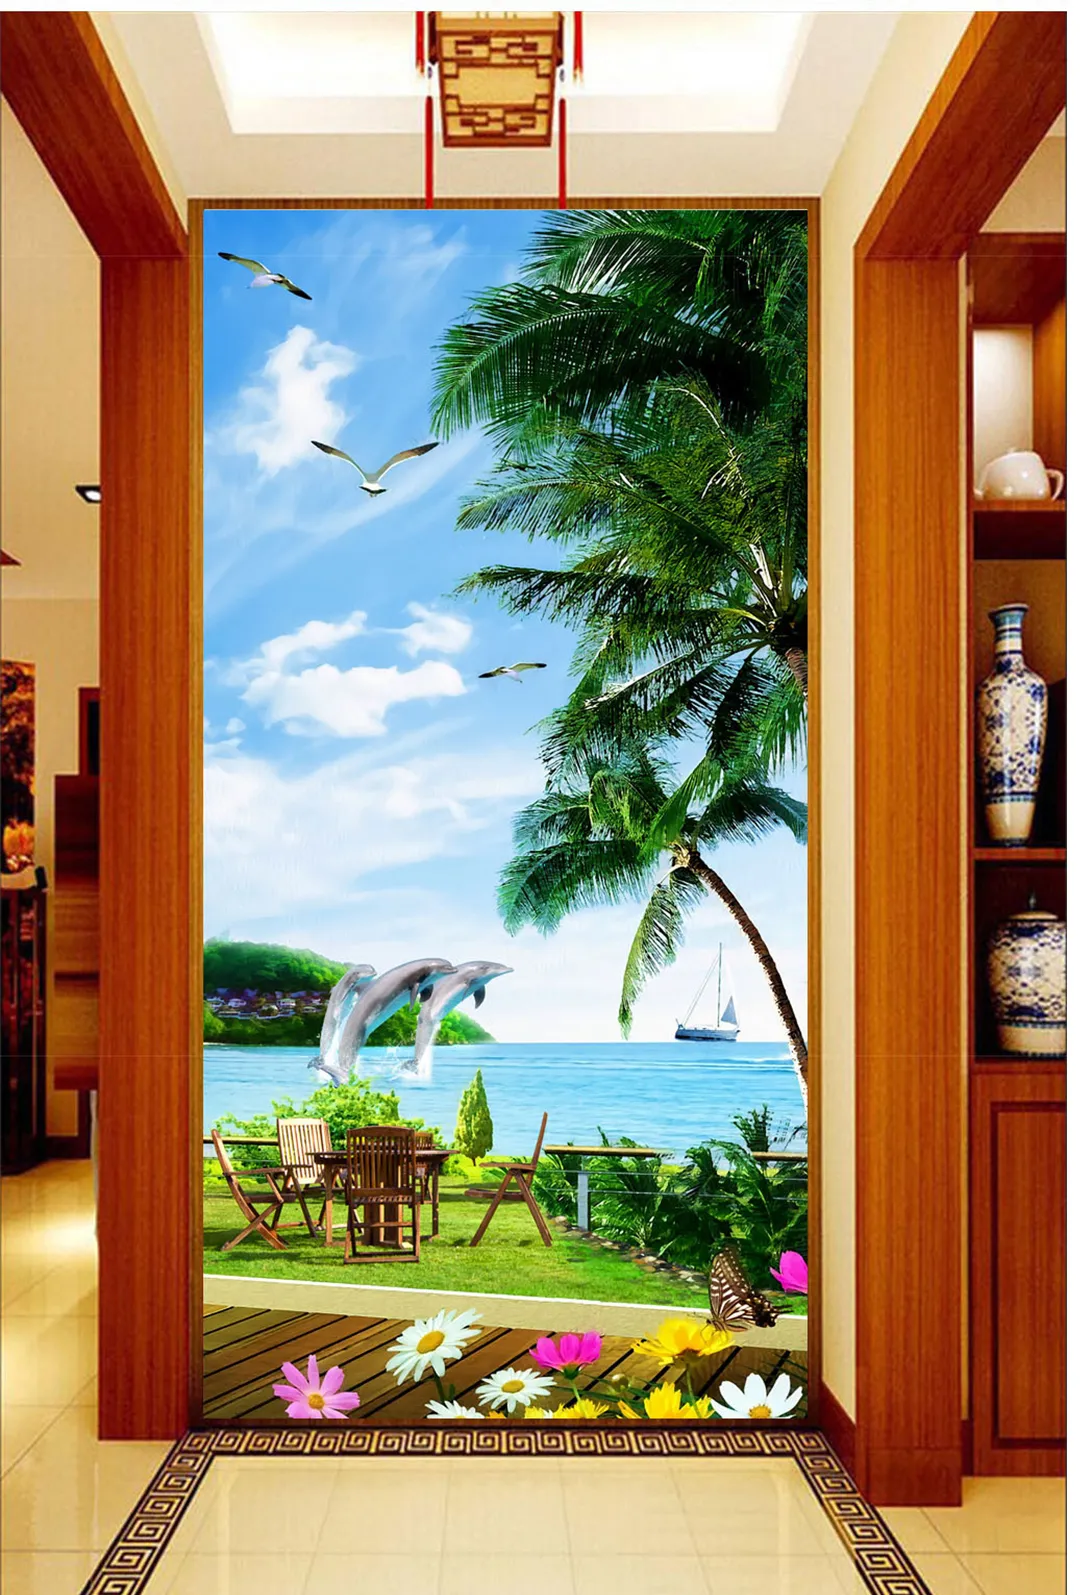 Custom Beach Coconut Grove Mooie Dolfijn Zeegezicht 3D Wallpaper Indoor veranda achtergrond wanddecoratie muurschildering behang